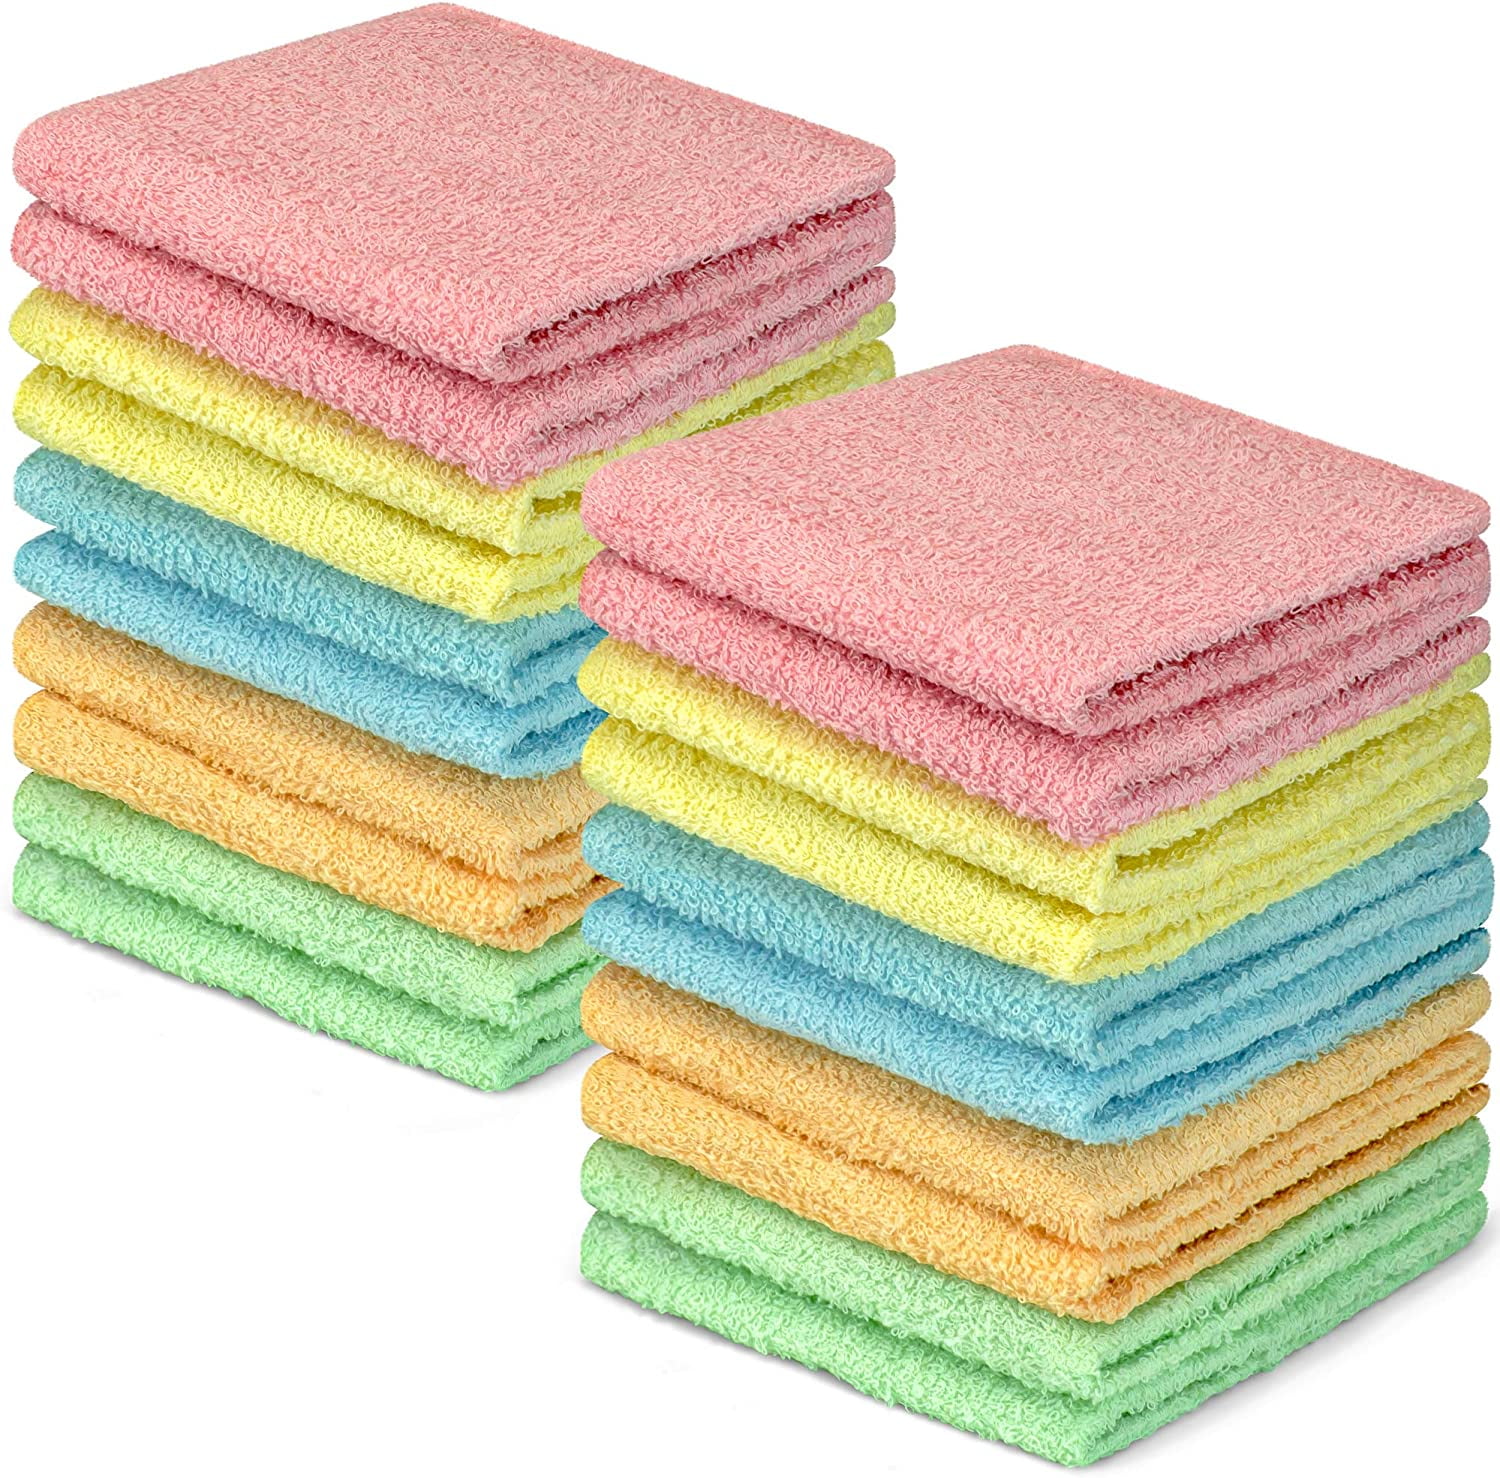 DecorRack 100% Cotton Wash Cloth, 12 x 12 inch, Pastel Colors (20 Pack ...